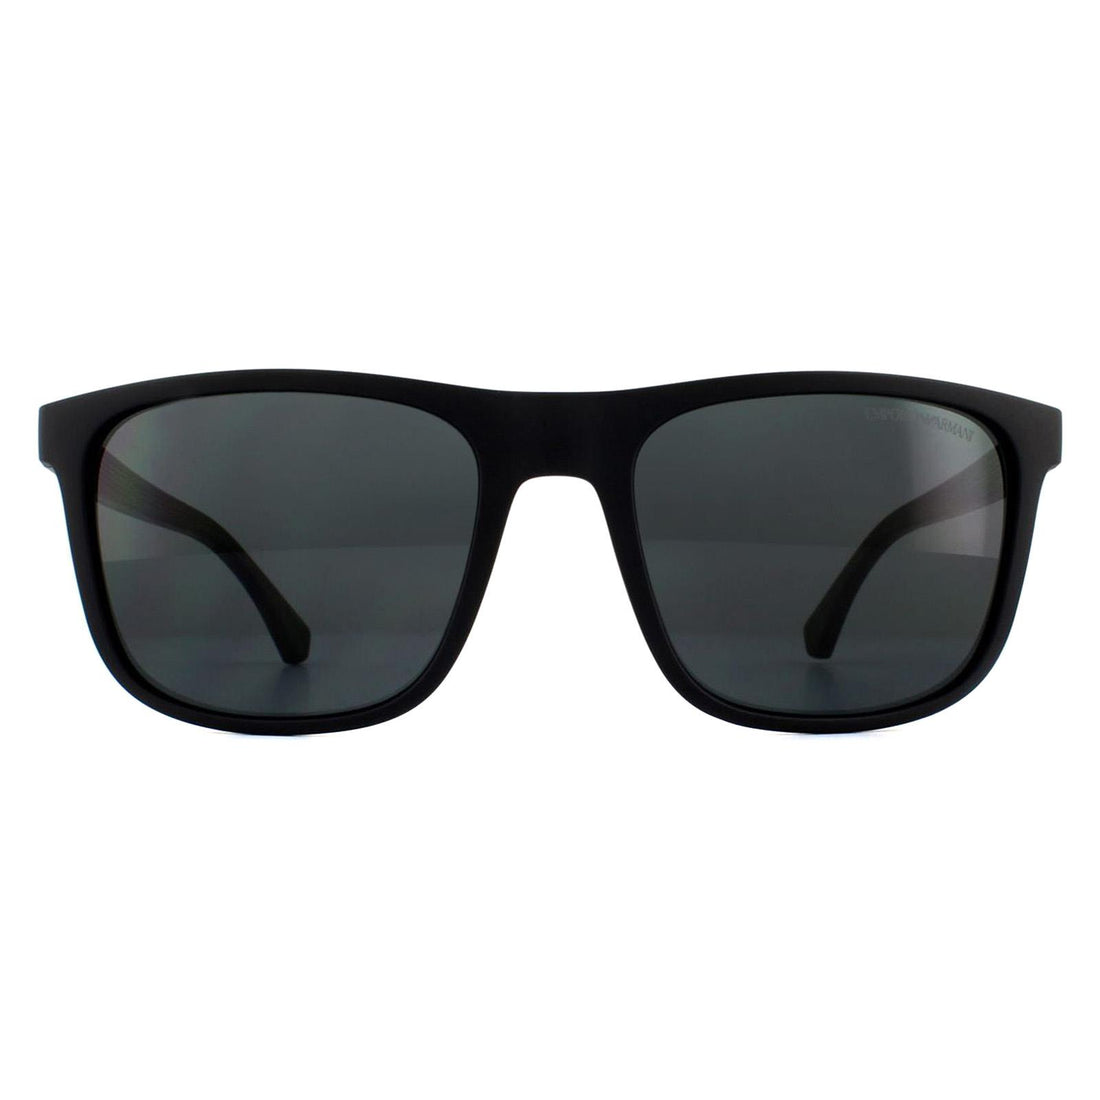 Emporio Armani EA4129 Sunglasses Matte Black / Grey Gradient